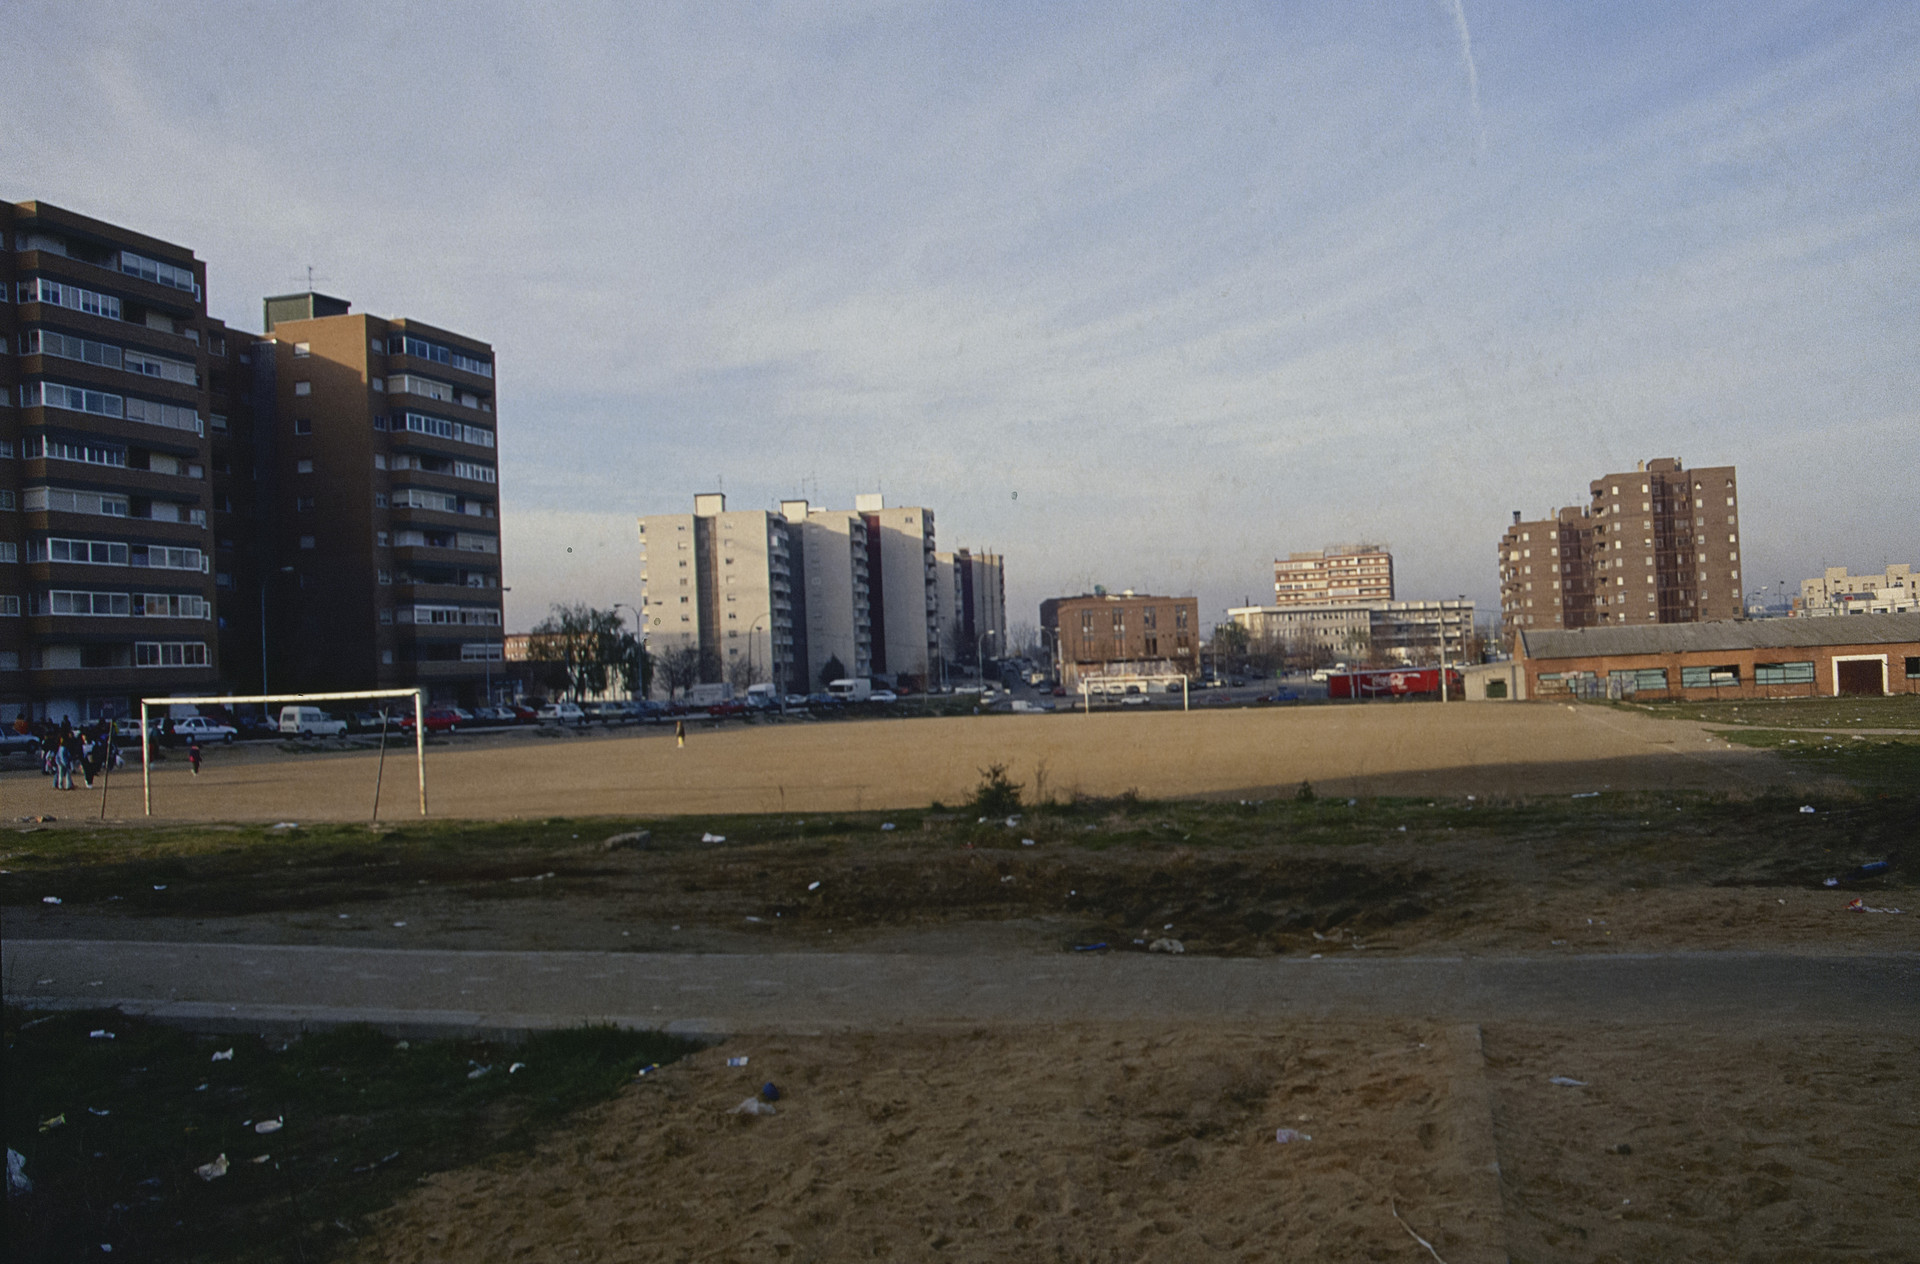 Campo de fútbol de tierra en un solar entre edificios